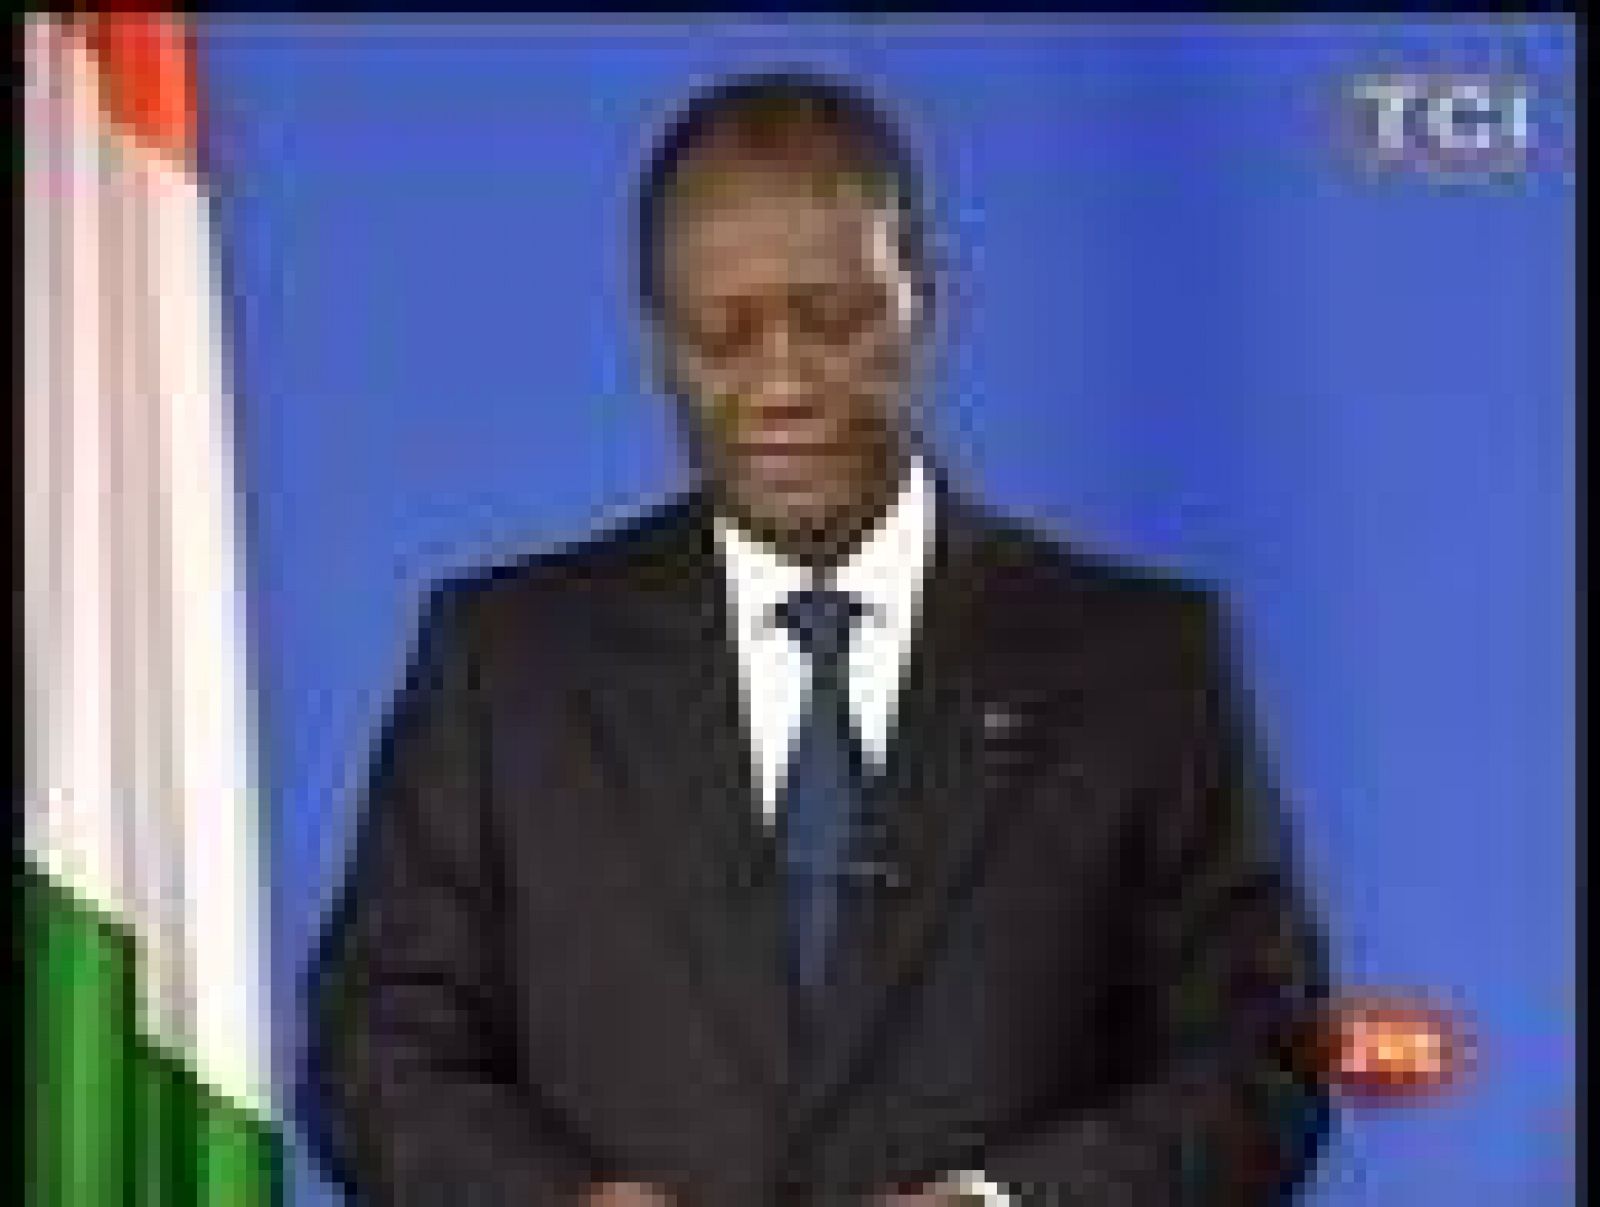   El expresidente marfileño, Laurent Gbagbó será juzgado en Costa de Marfil. Es el anuncio que ha hecho el presidente electo, Allassane Ouattara, horas después de que su rival fuera detenido. Llevaba dos semanas encerrado en su búnker, resistiéndose a dejar el poder. Ouattara ha lanzado un mensaje de reconciliación nacional